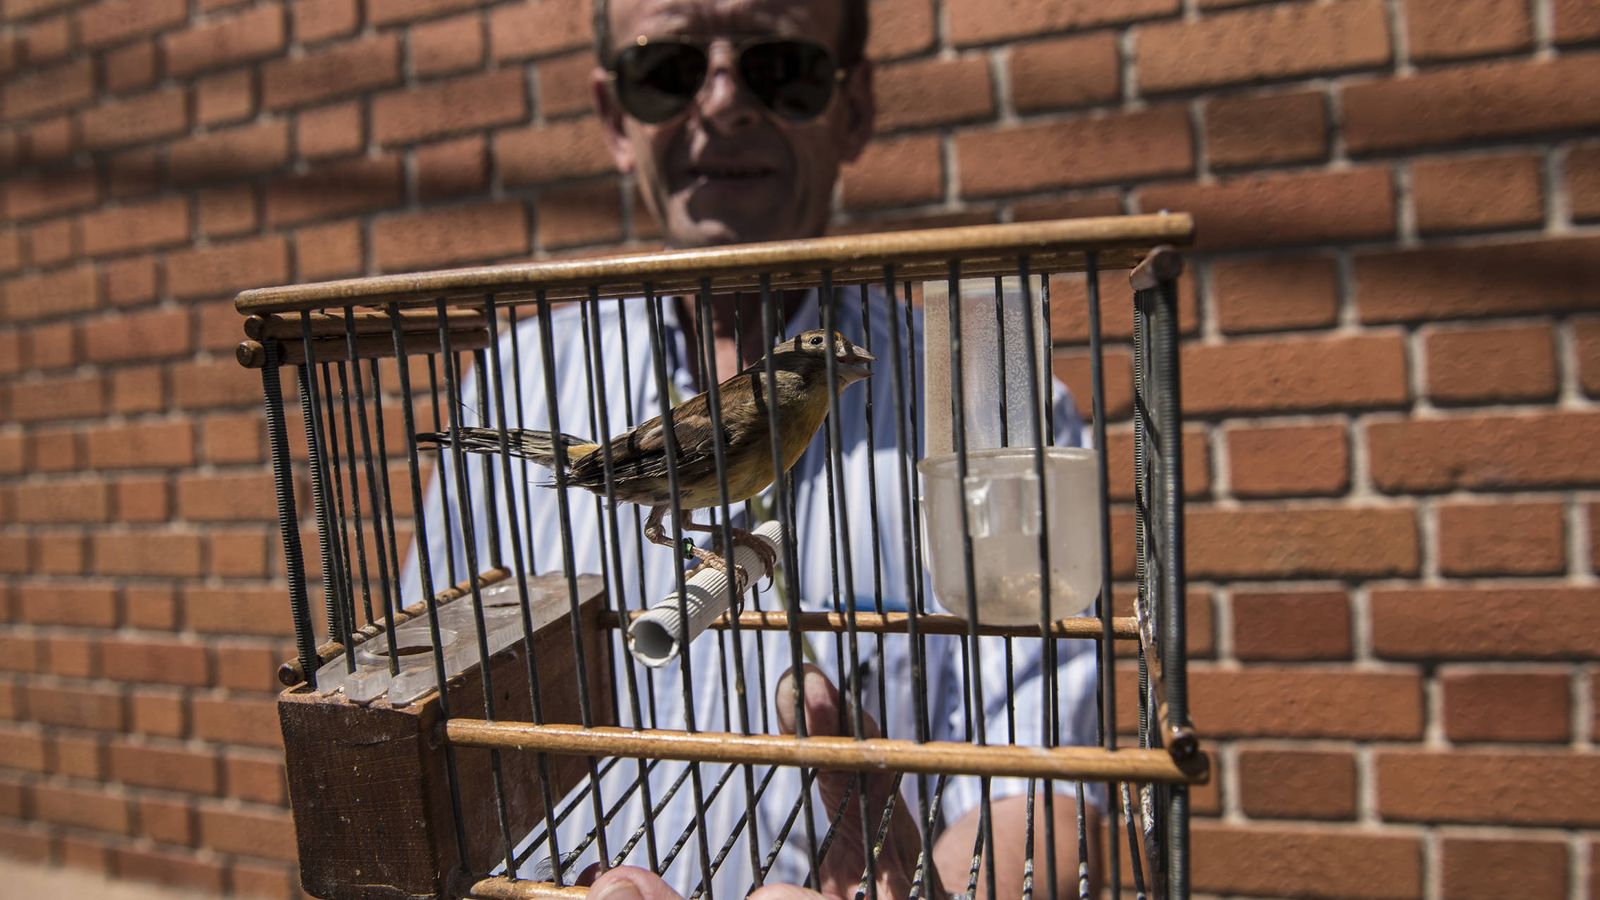 Foto: Juan de Dios, delegado nacional de silvestrismo en España, sujeta uno de sus pájaros para adiestramiento. (N. L. P.)